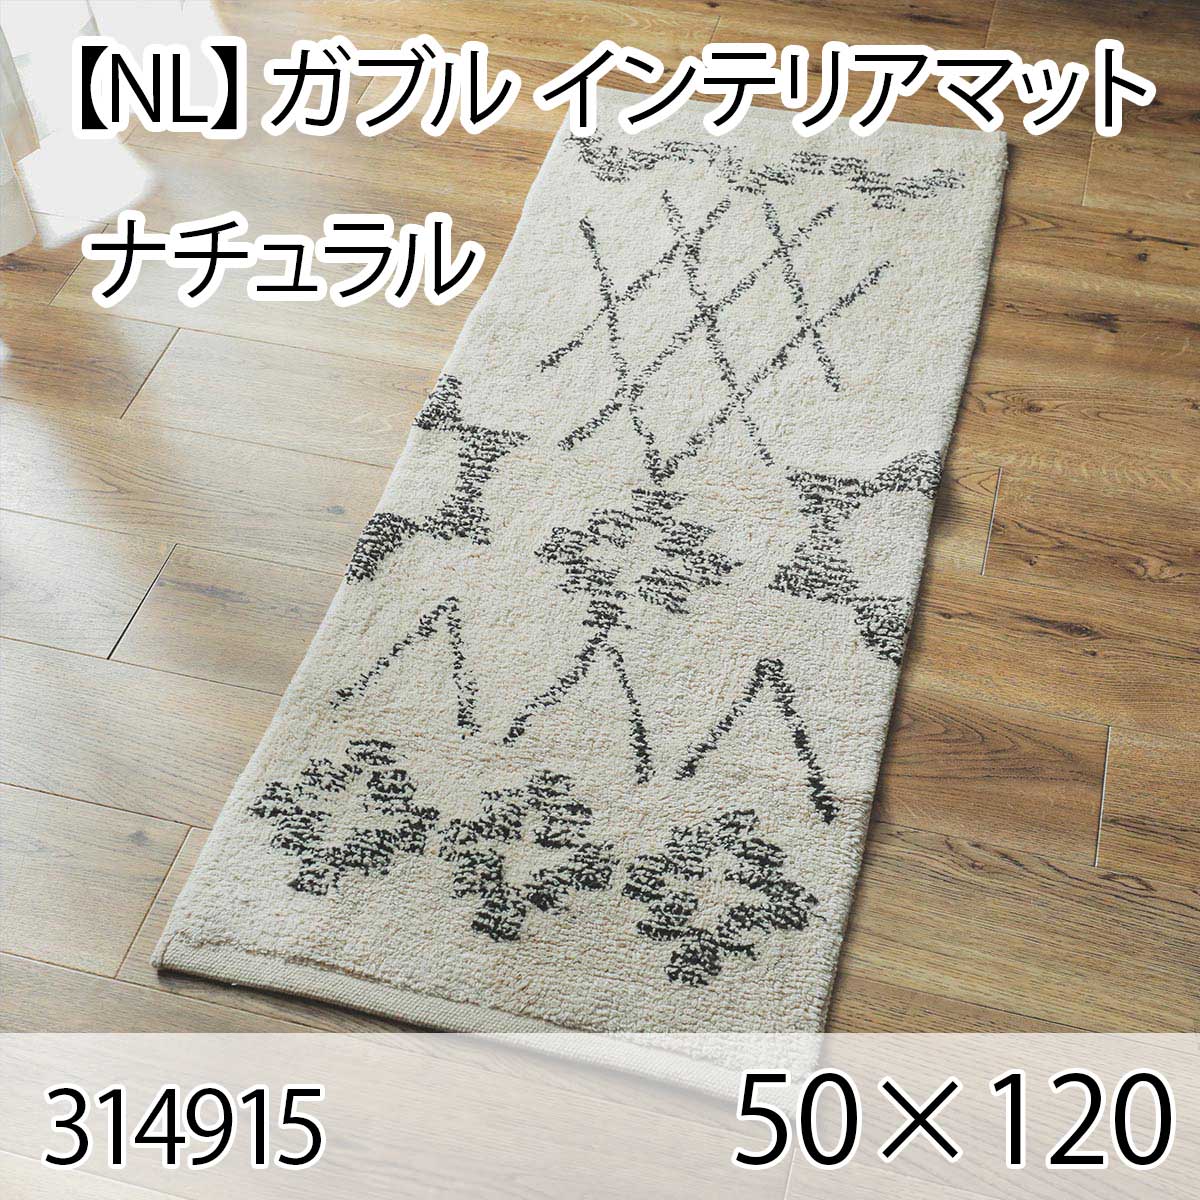 【NL】ガブル インテリアマット 50cmx120cm ナチュラル